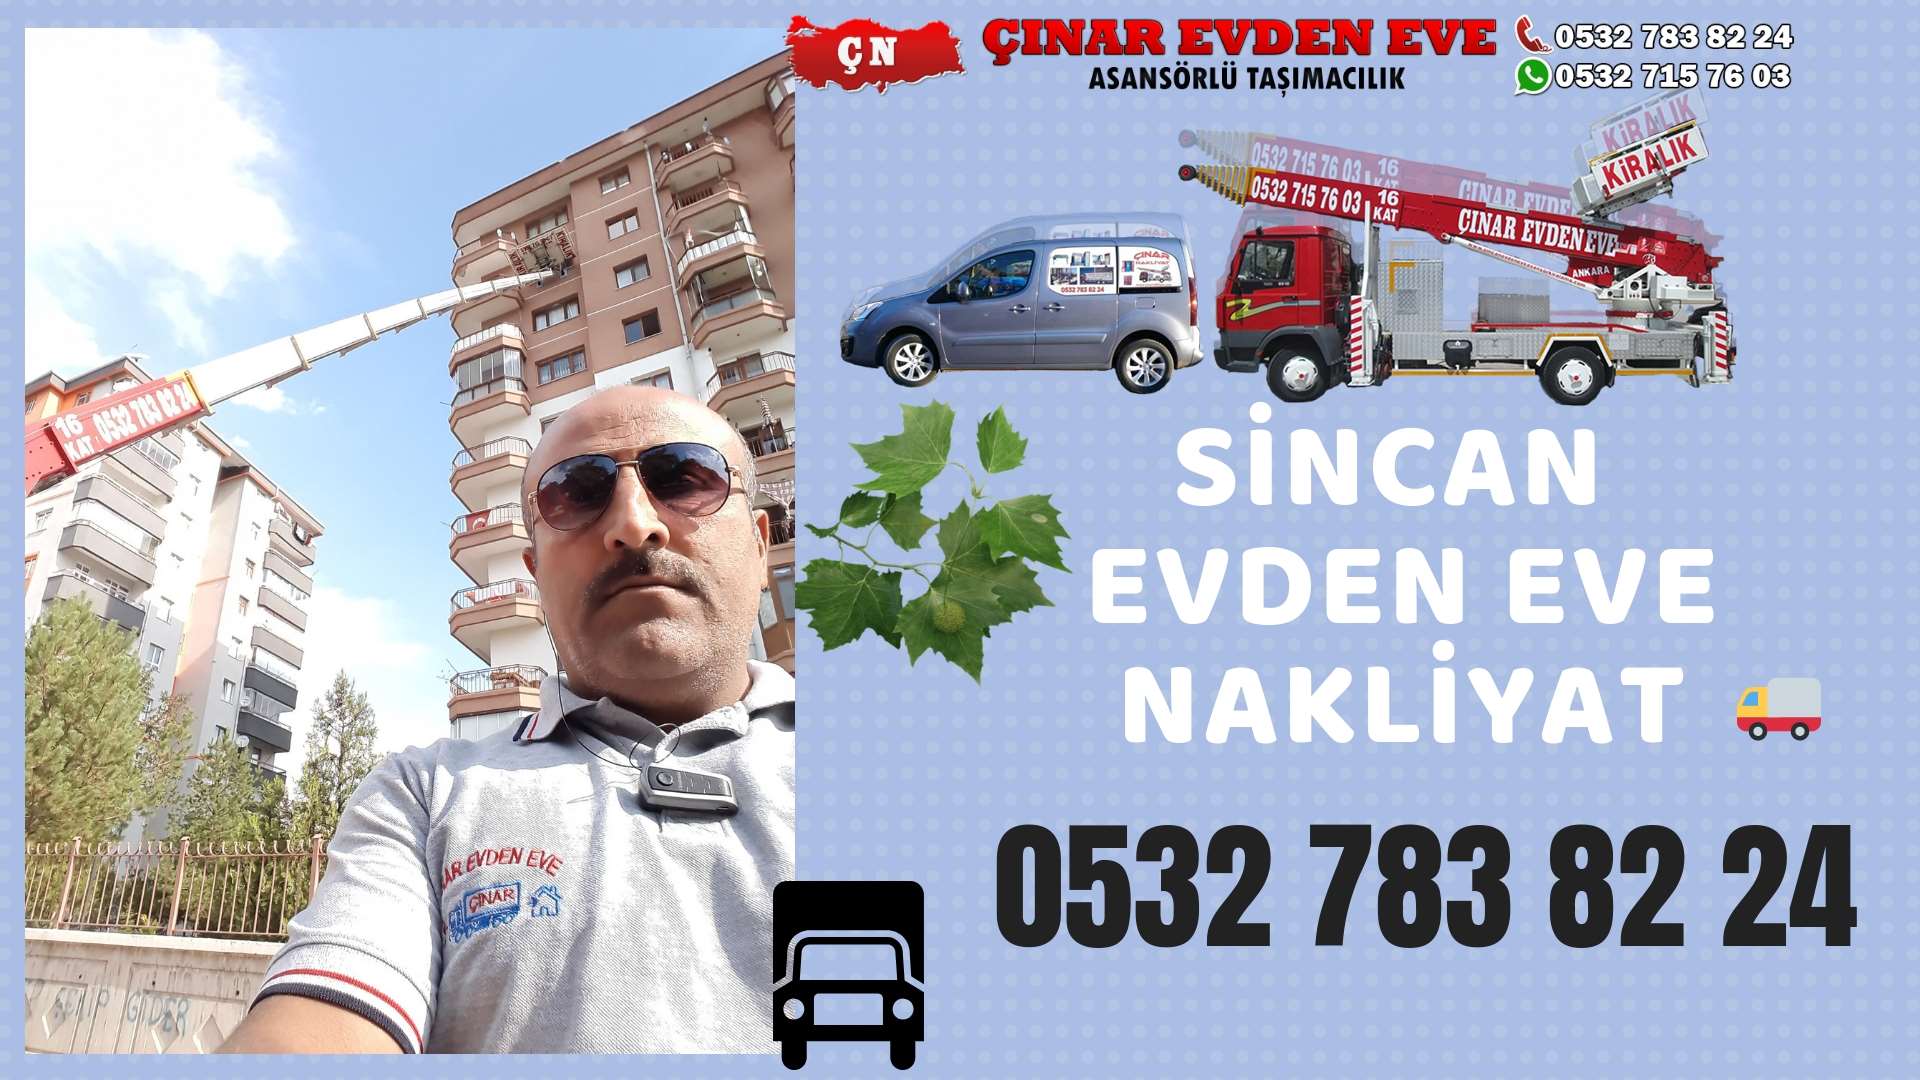 Ankara Törekent Evden Eve Nakliyat, Asansörlü Taşımacılık, Ofis / İş Yeri Taşıma 0532 715 76 03